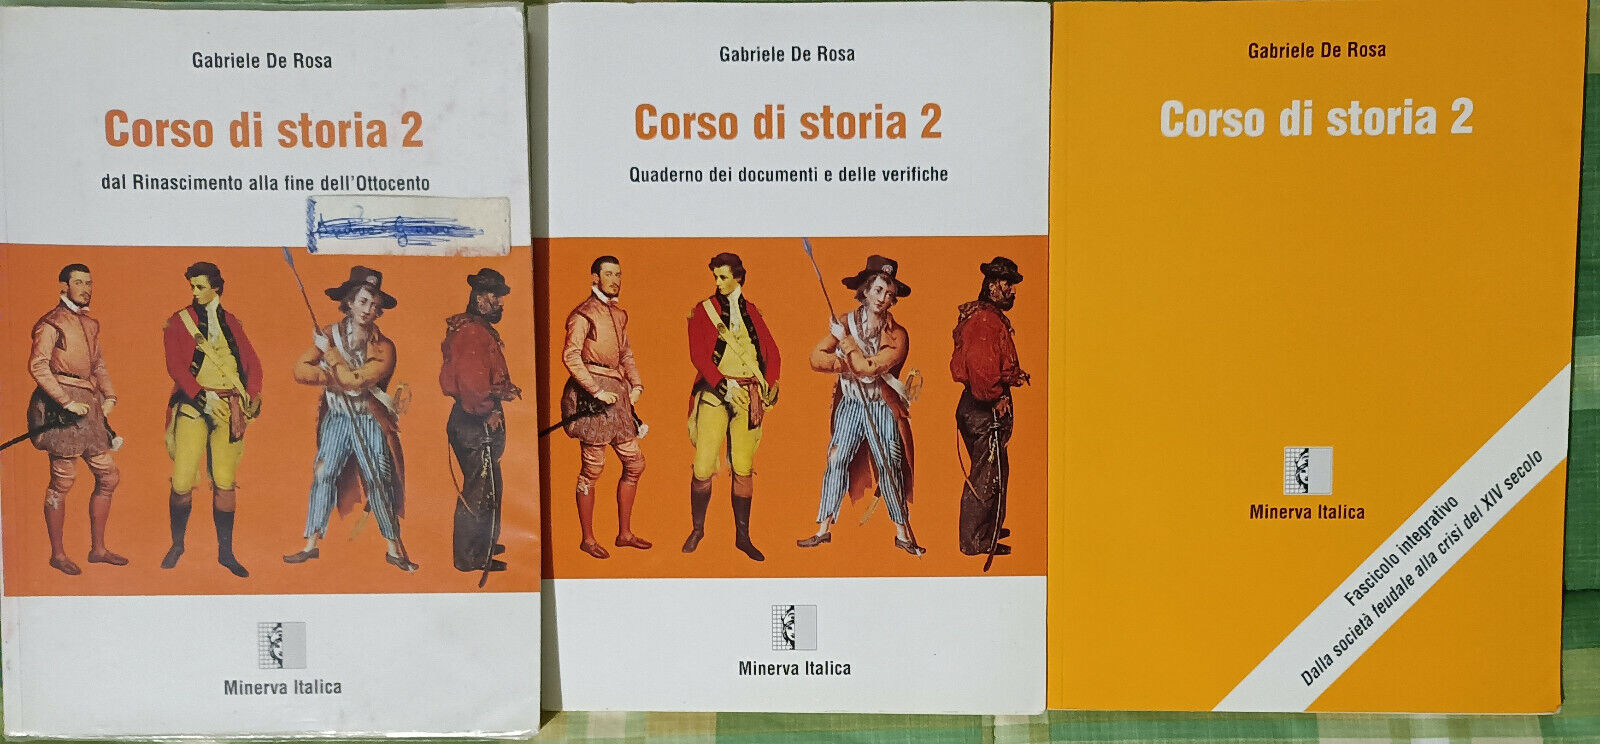 Corso di storia 2 volumi 3 - Gabriele De Rosa - Minerva italica1997 - A